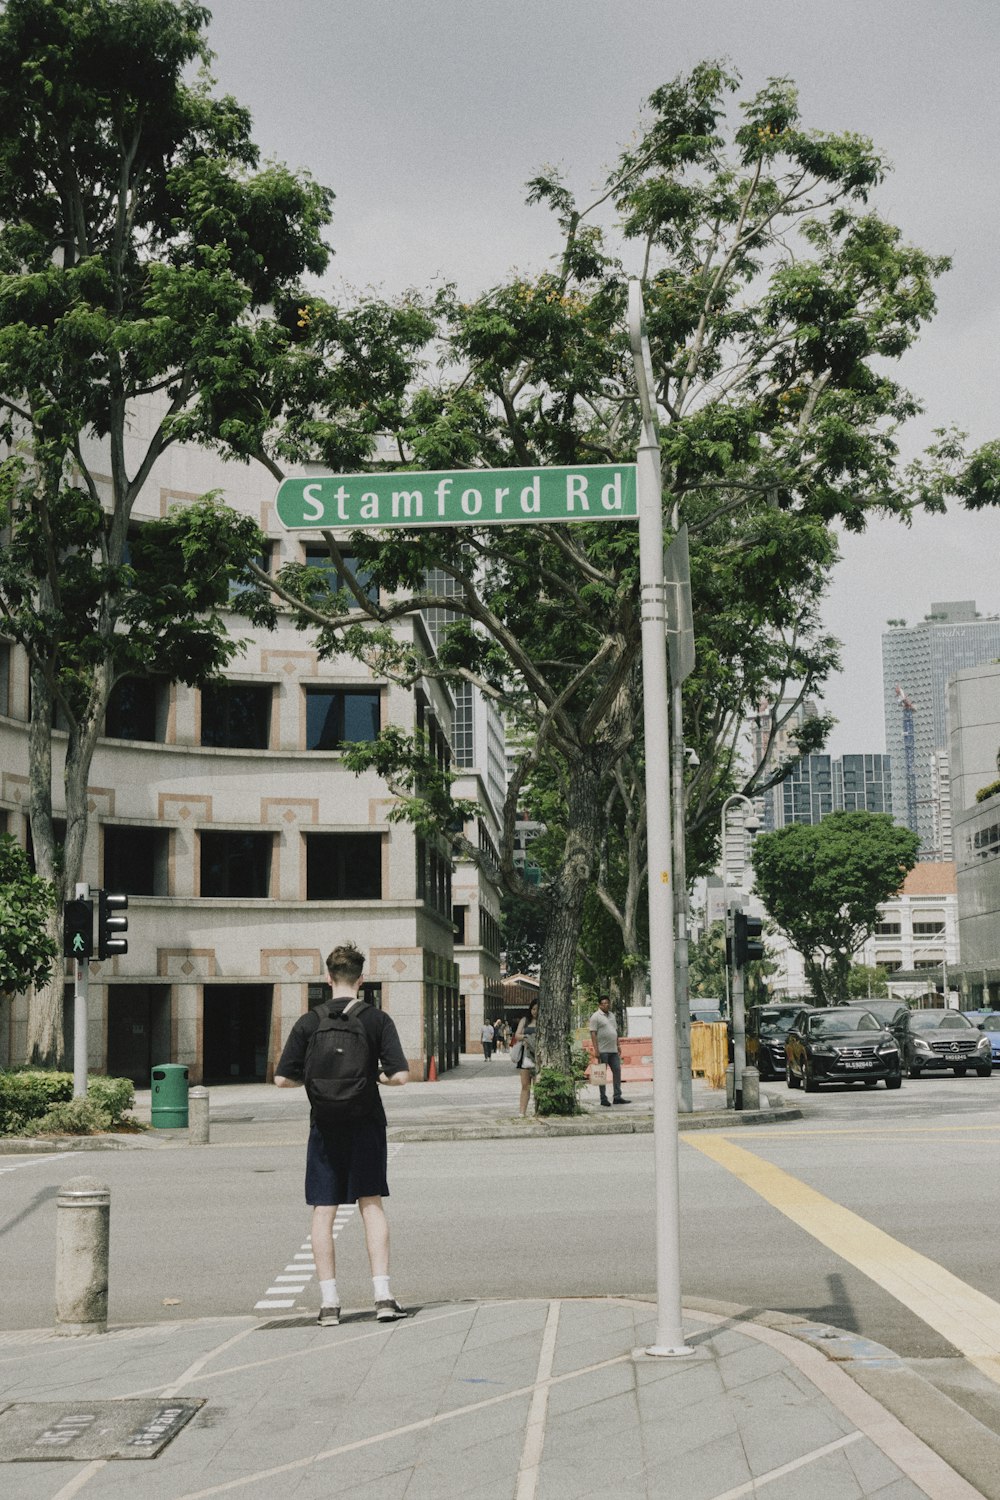 un hombre parado en una esquina de la calle bajo un letrero de la calle